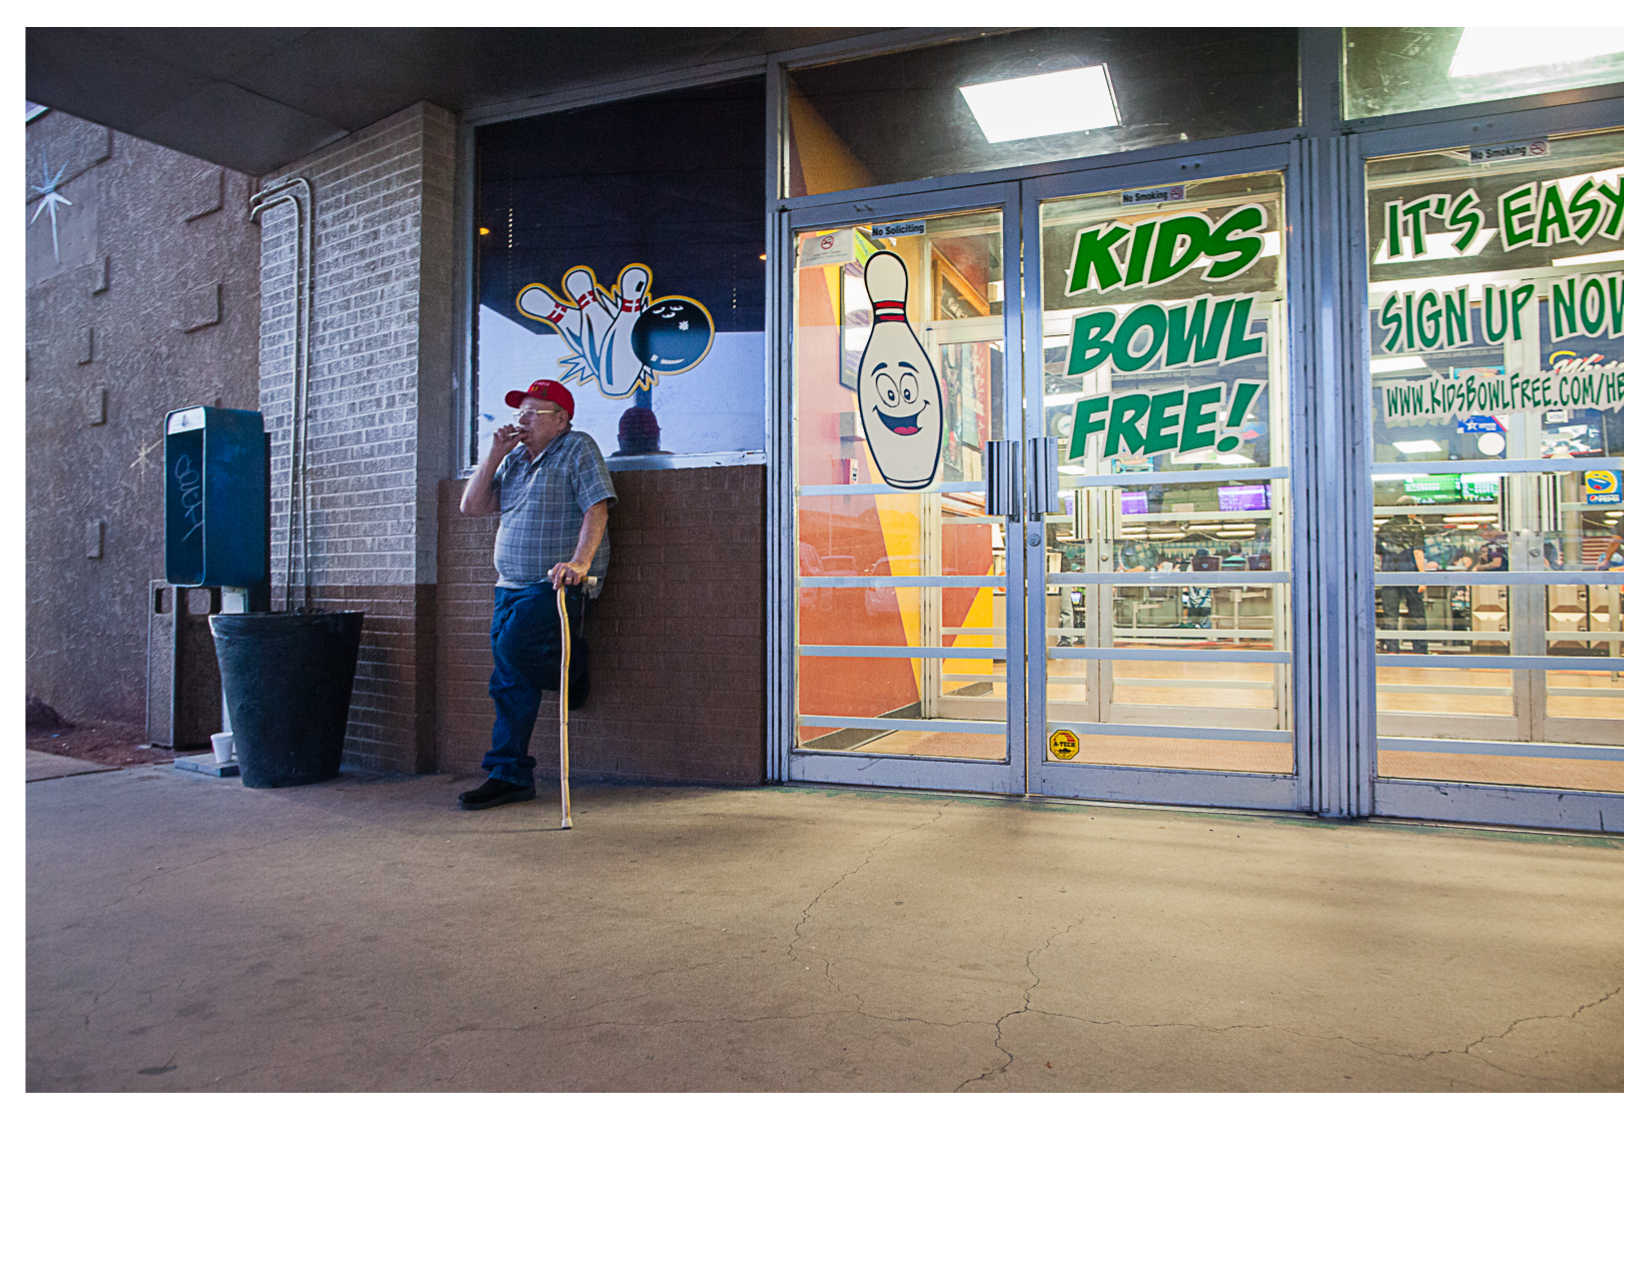 Smoker (Kids Bowl Free!), Skidmore’s Holiday Bowl, Albuquerque, NM